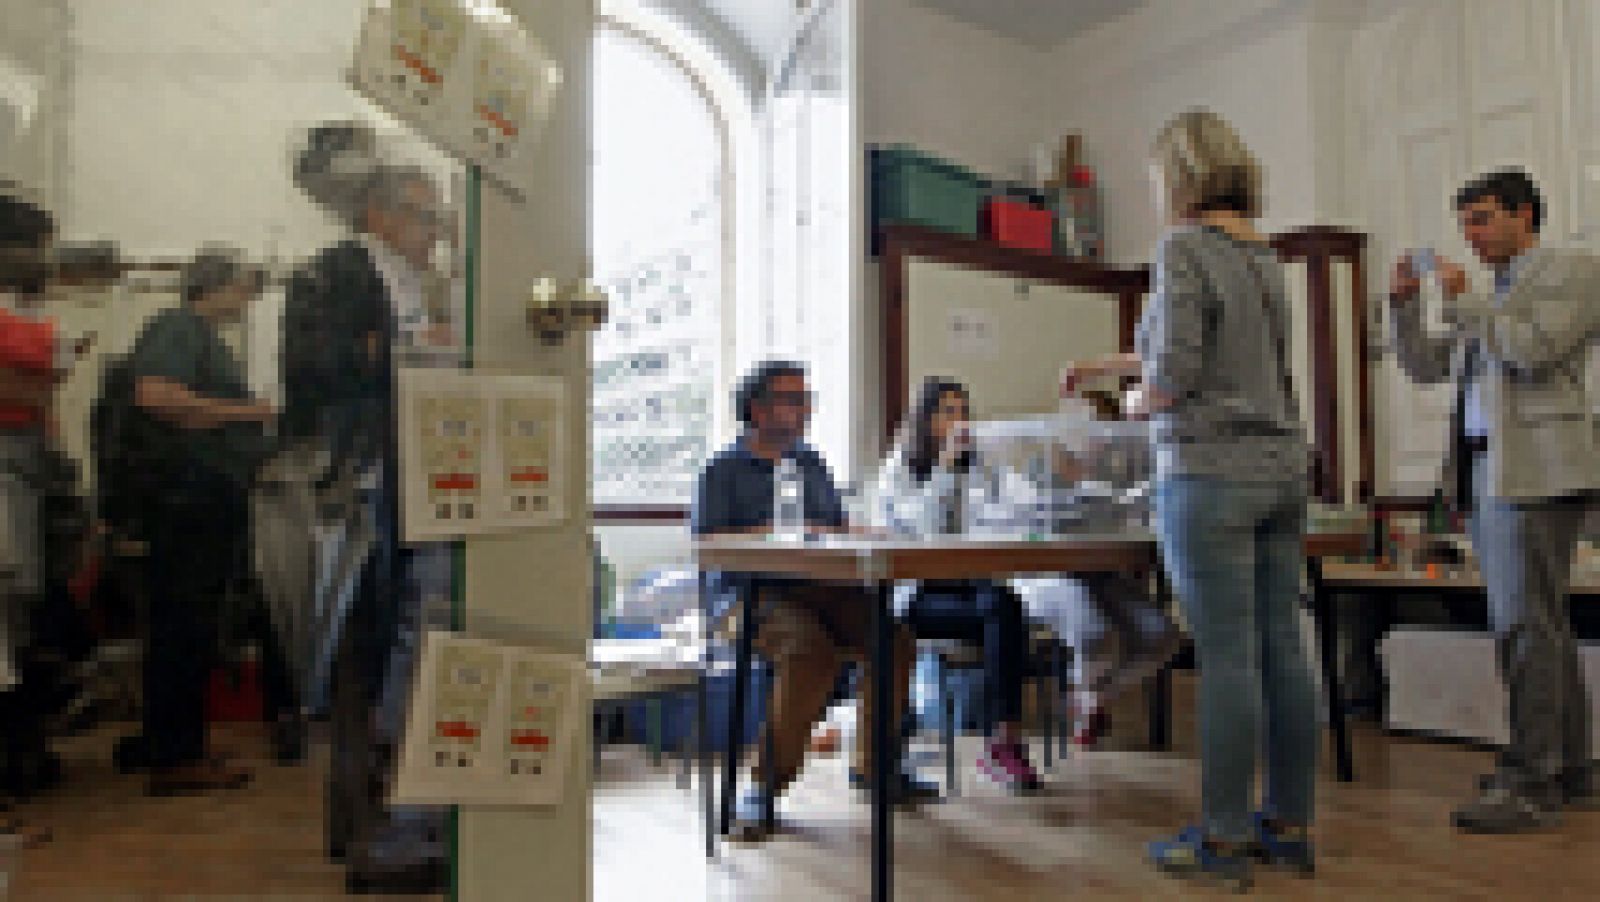 La participación ciudadana en el voto es 5,7 puntos mayor que en las elecciones catalanas de 2012